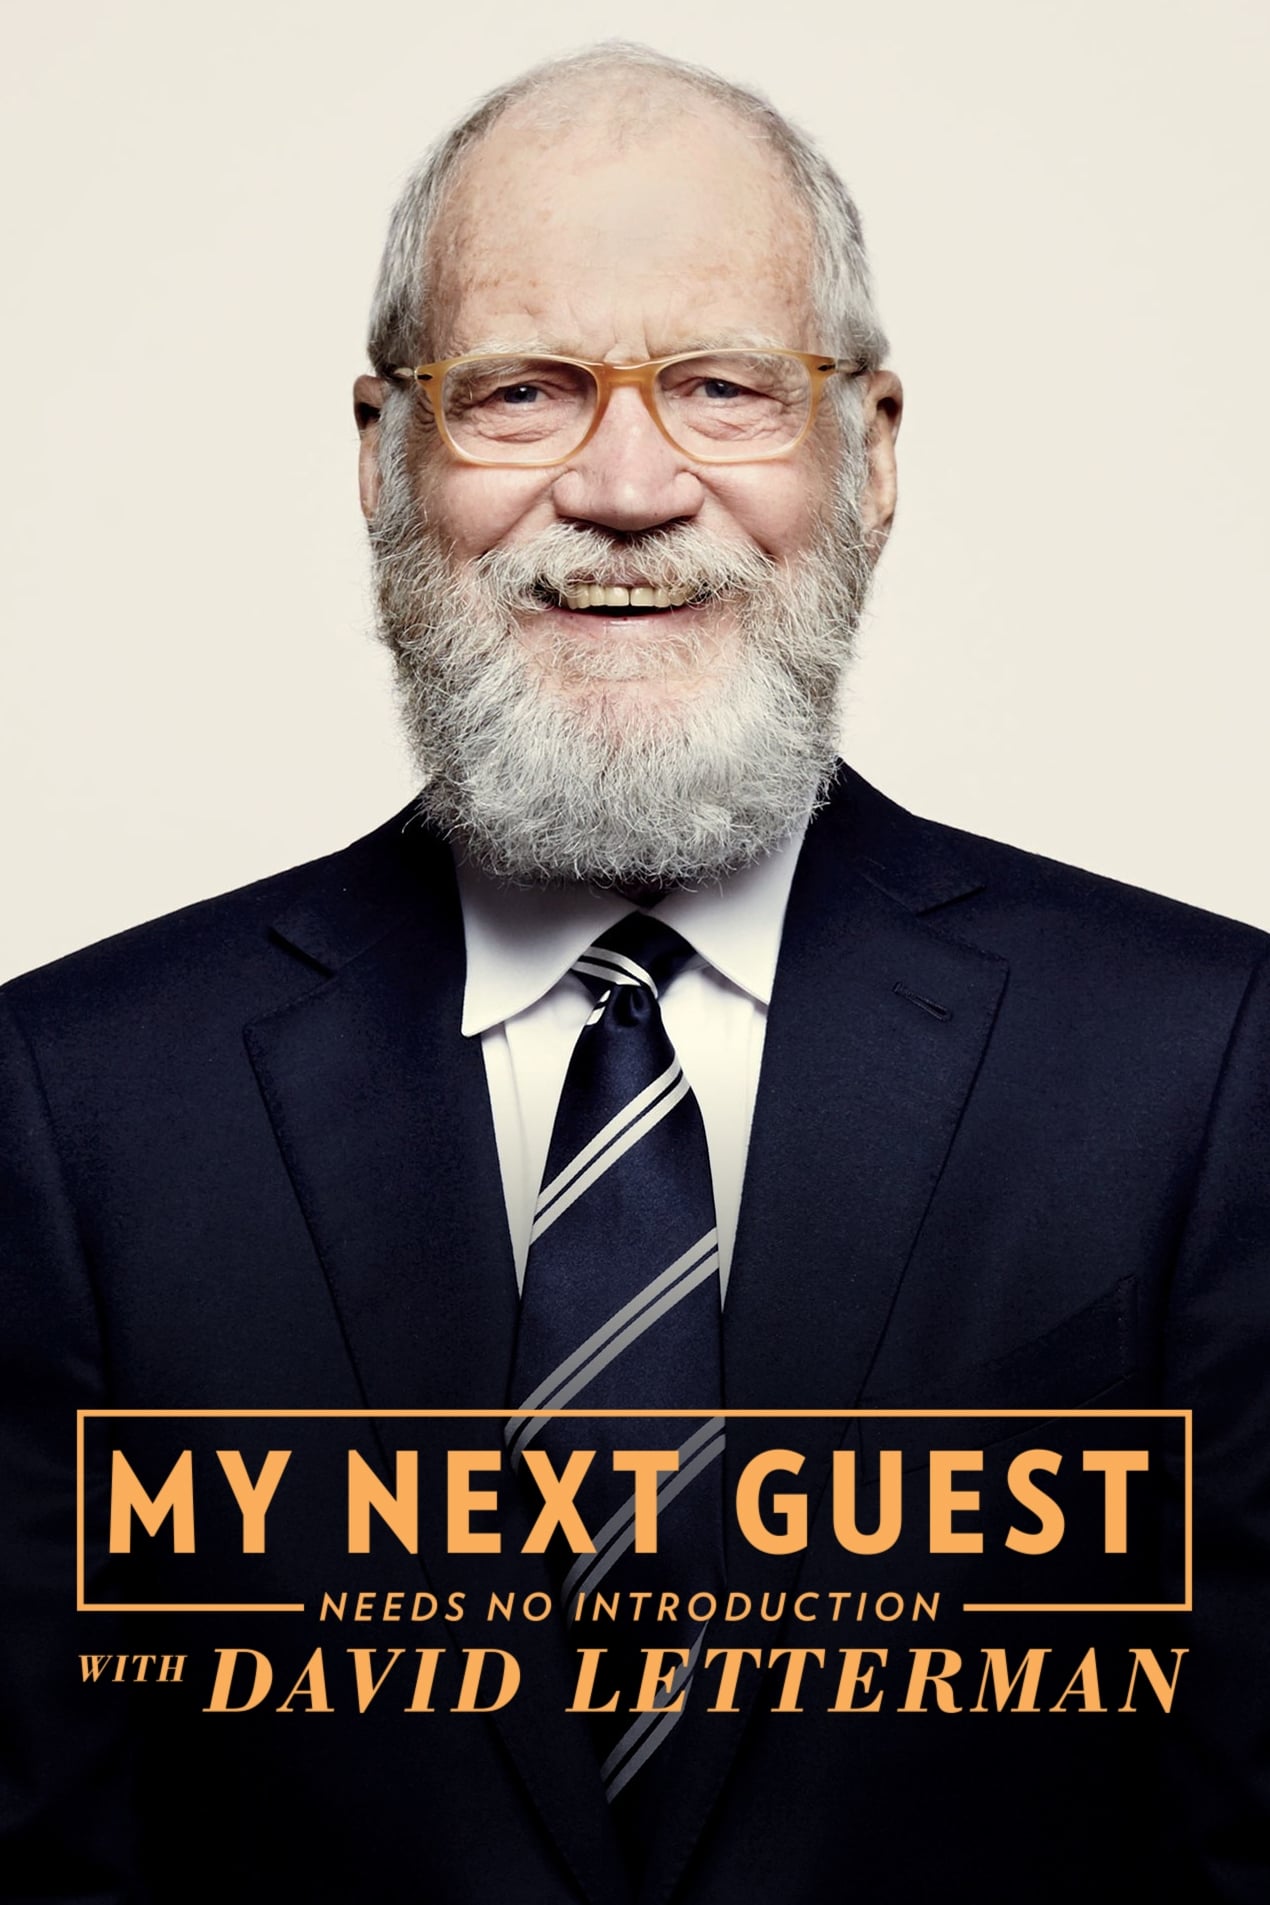 No necesitan presentación con David Letterman (2018)